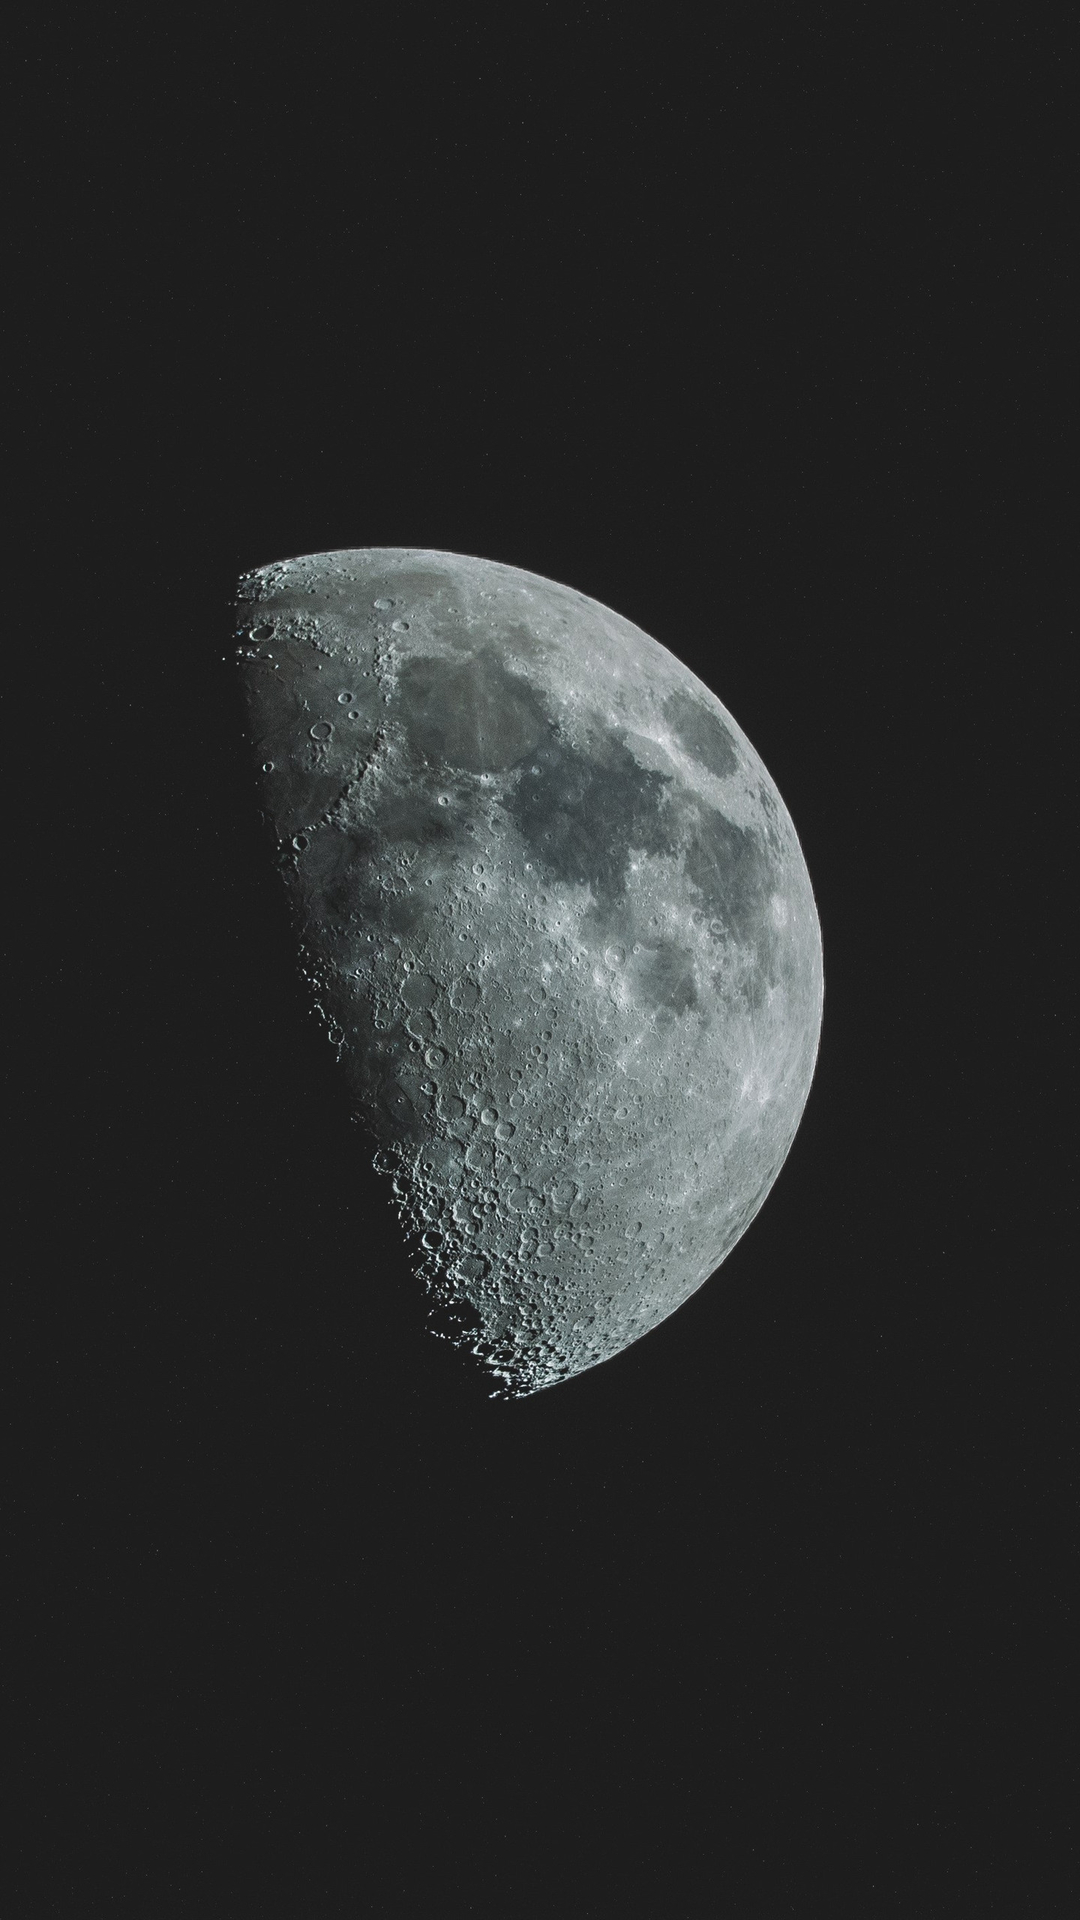 唯美的半月月亮高清手机壁纸套图1